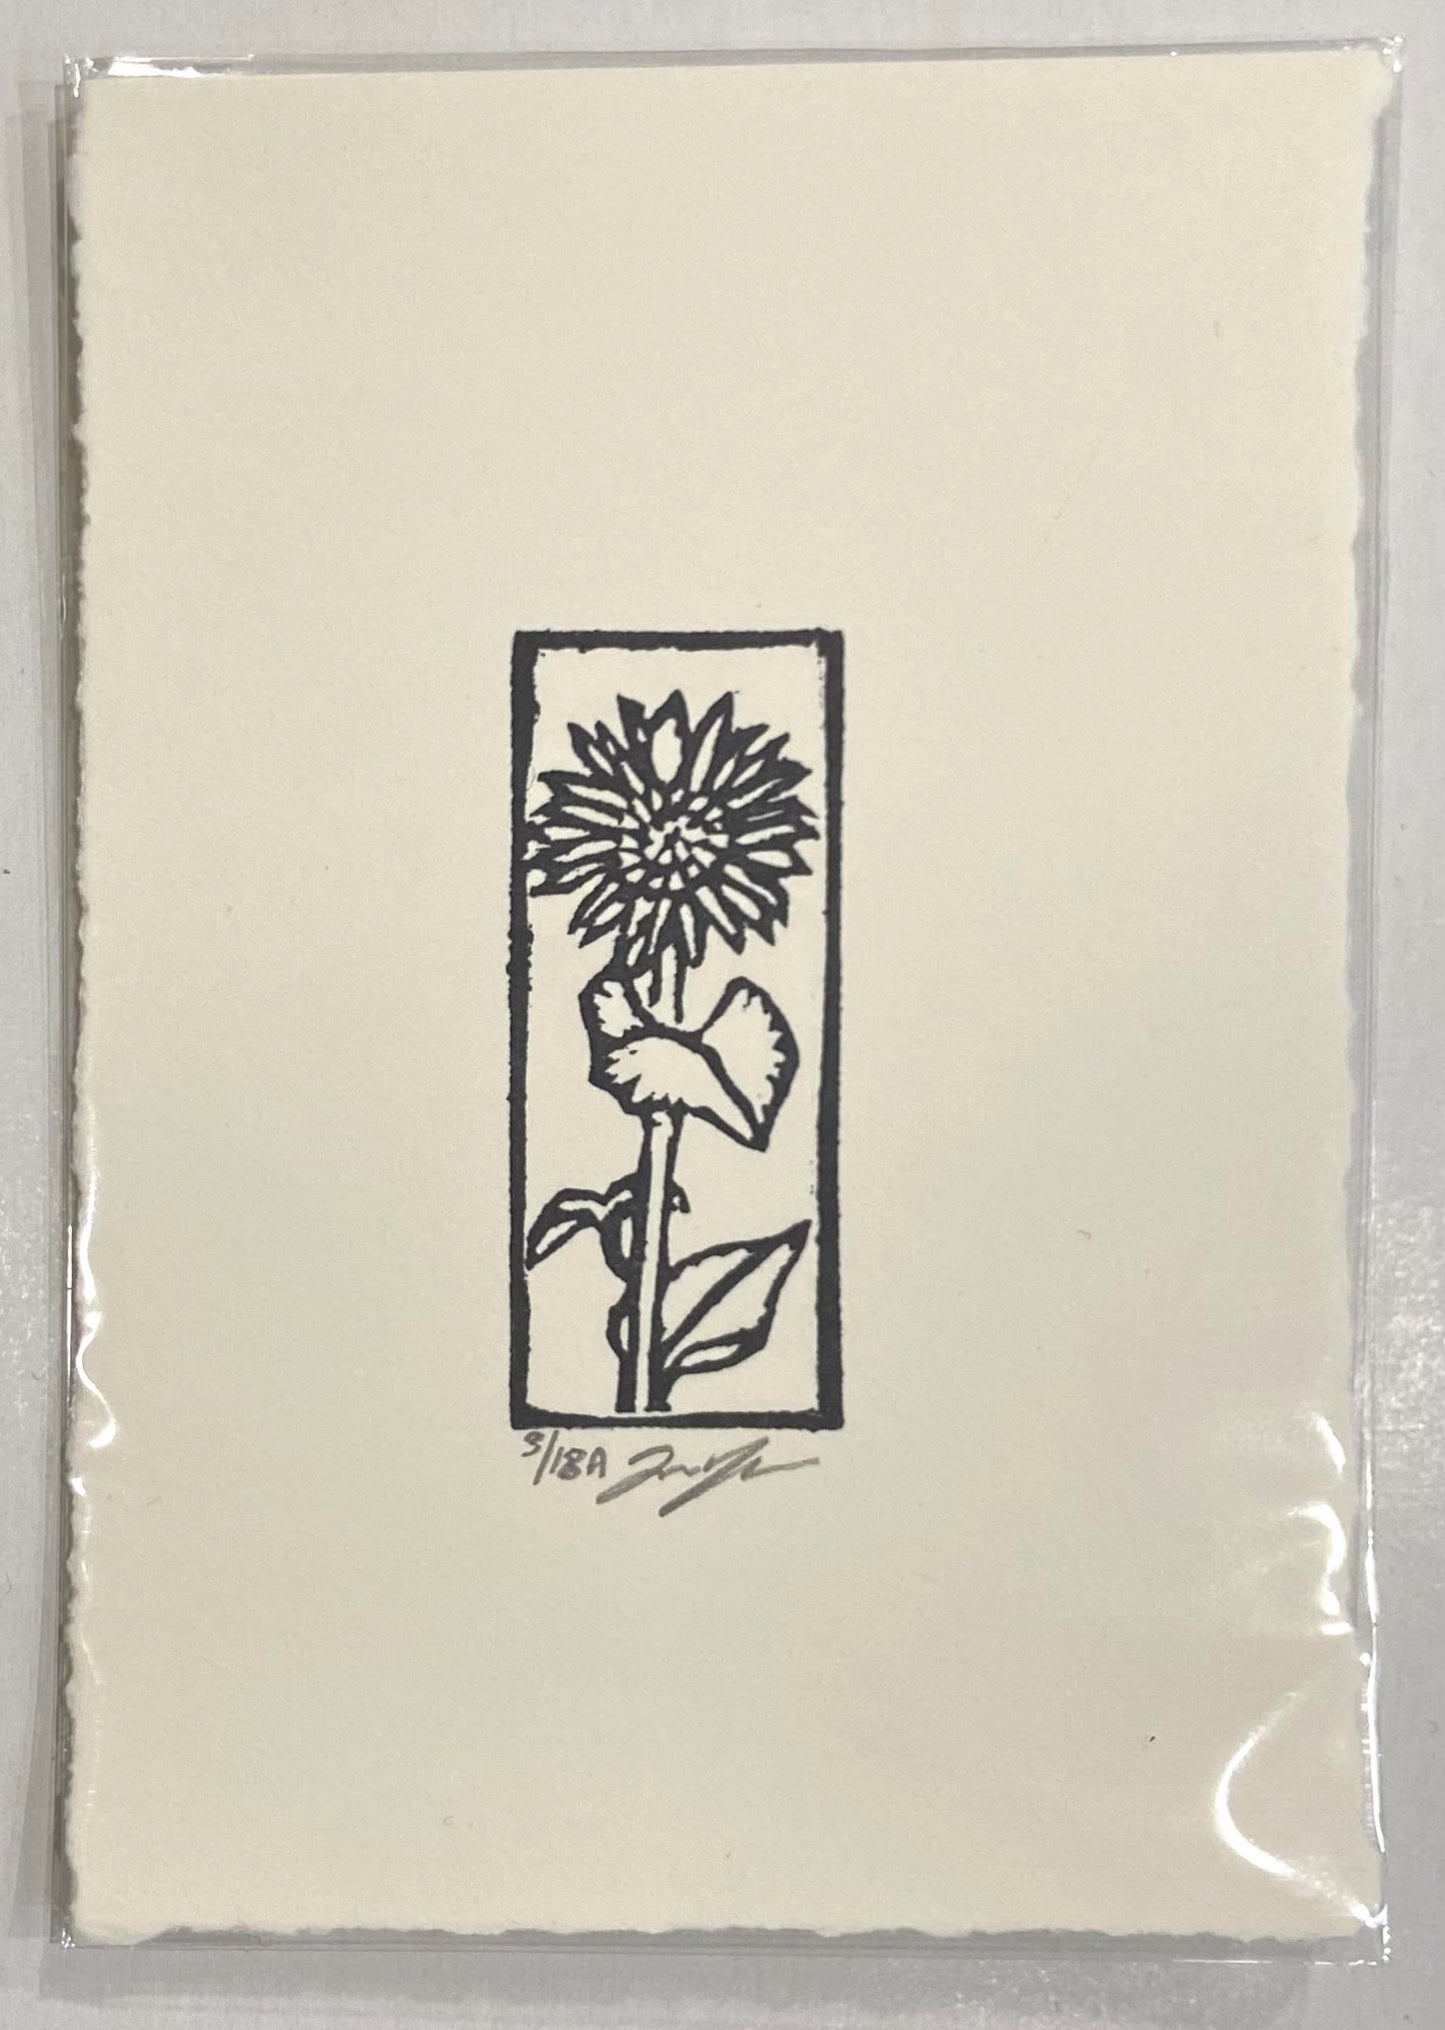 Eraser Print: Sunflower